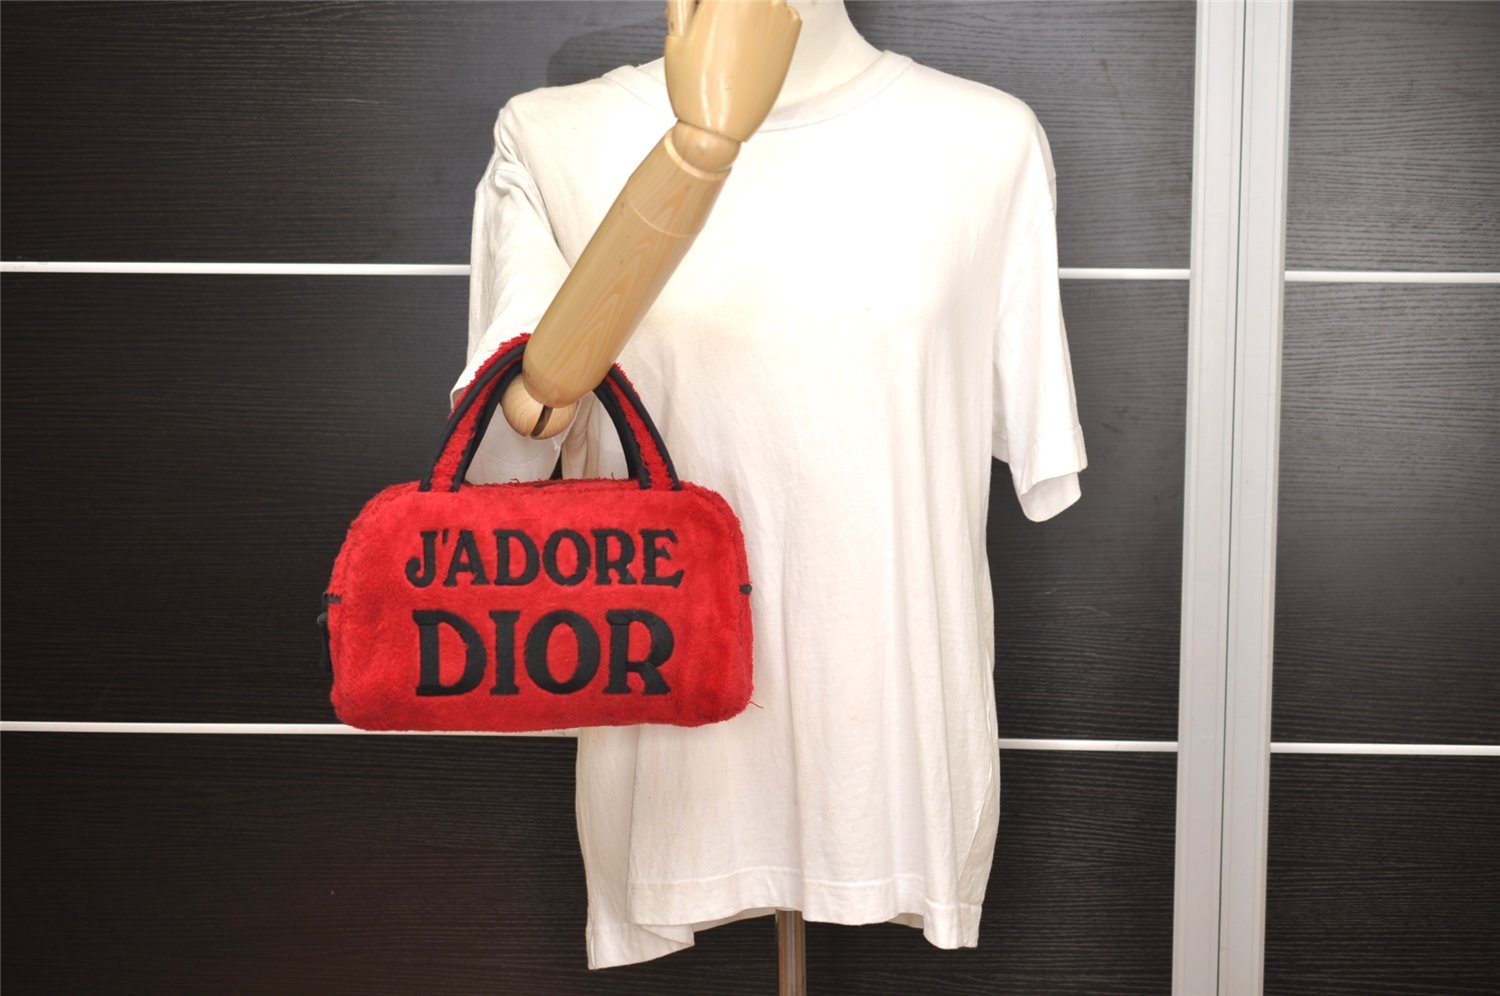 Authentic Christian Dior Vintage Shoulder Hand Bag Purse Pile Red CD 4946J